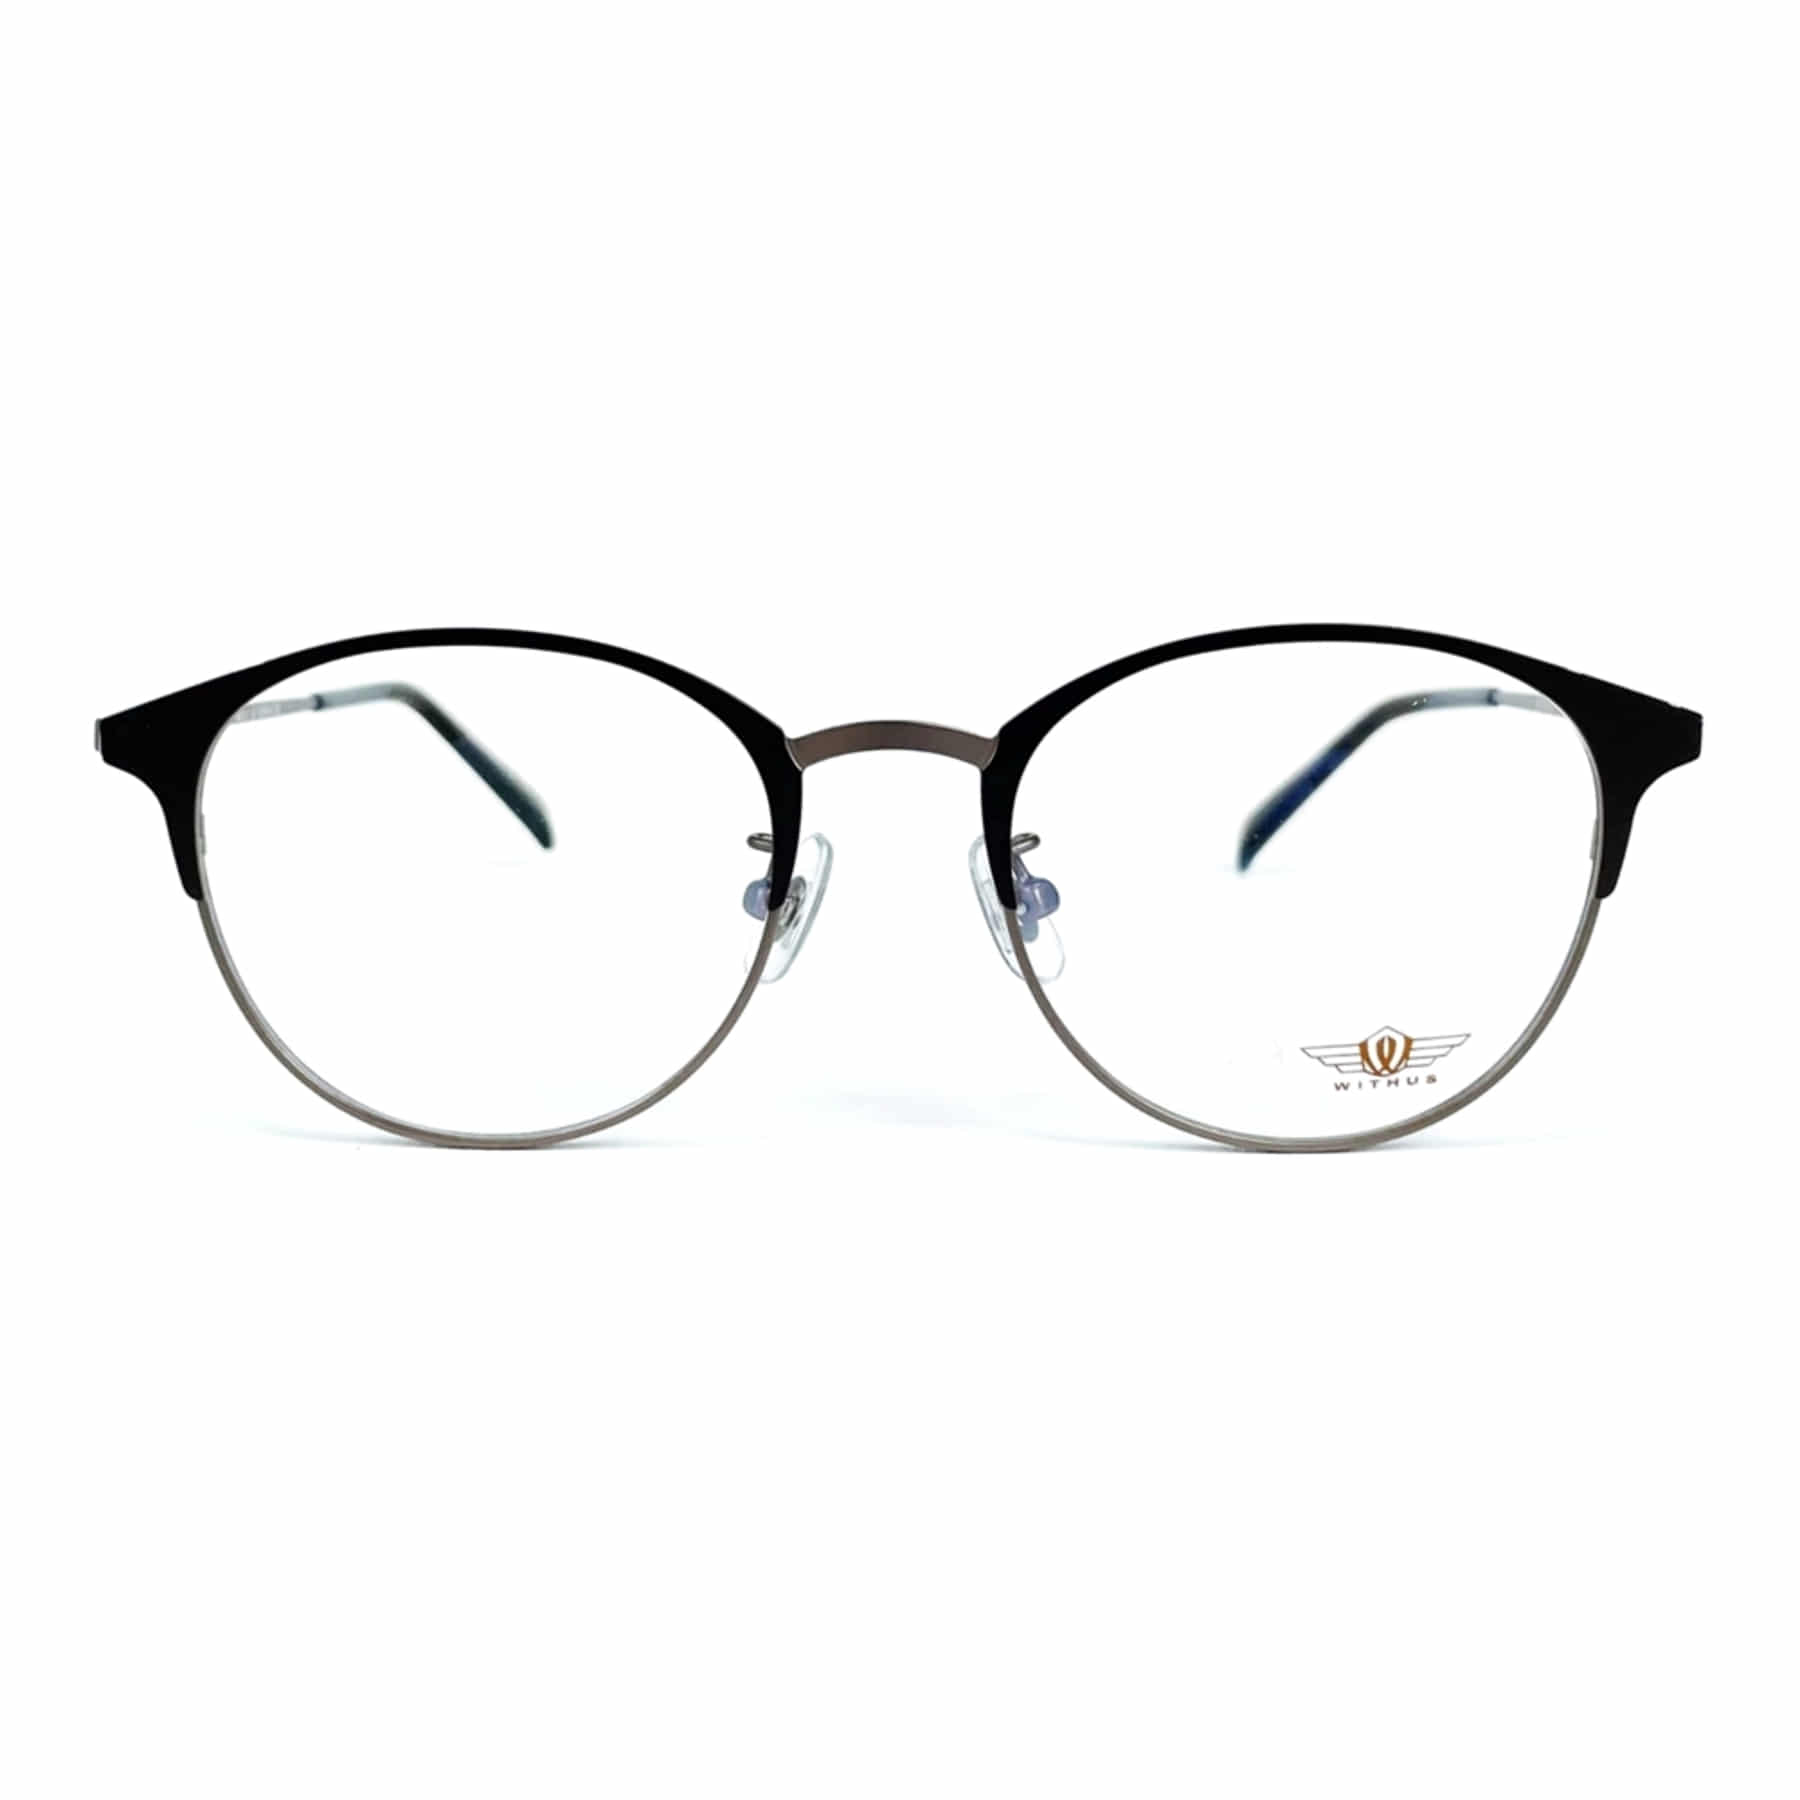 WITHUS-7379, Korean glasses, sunglasses, eyeglasses, glasses